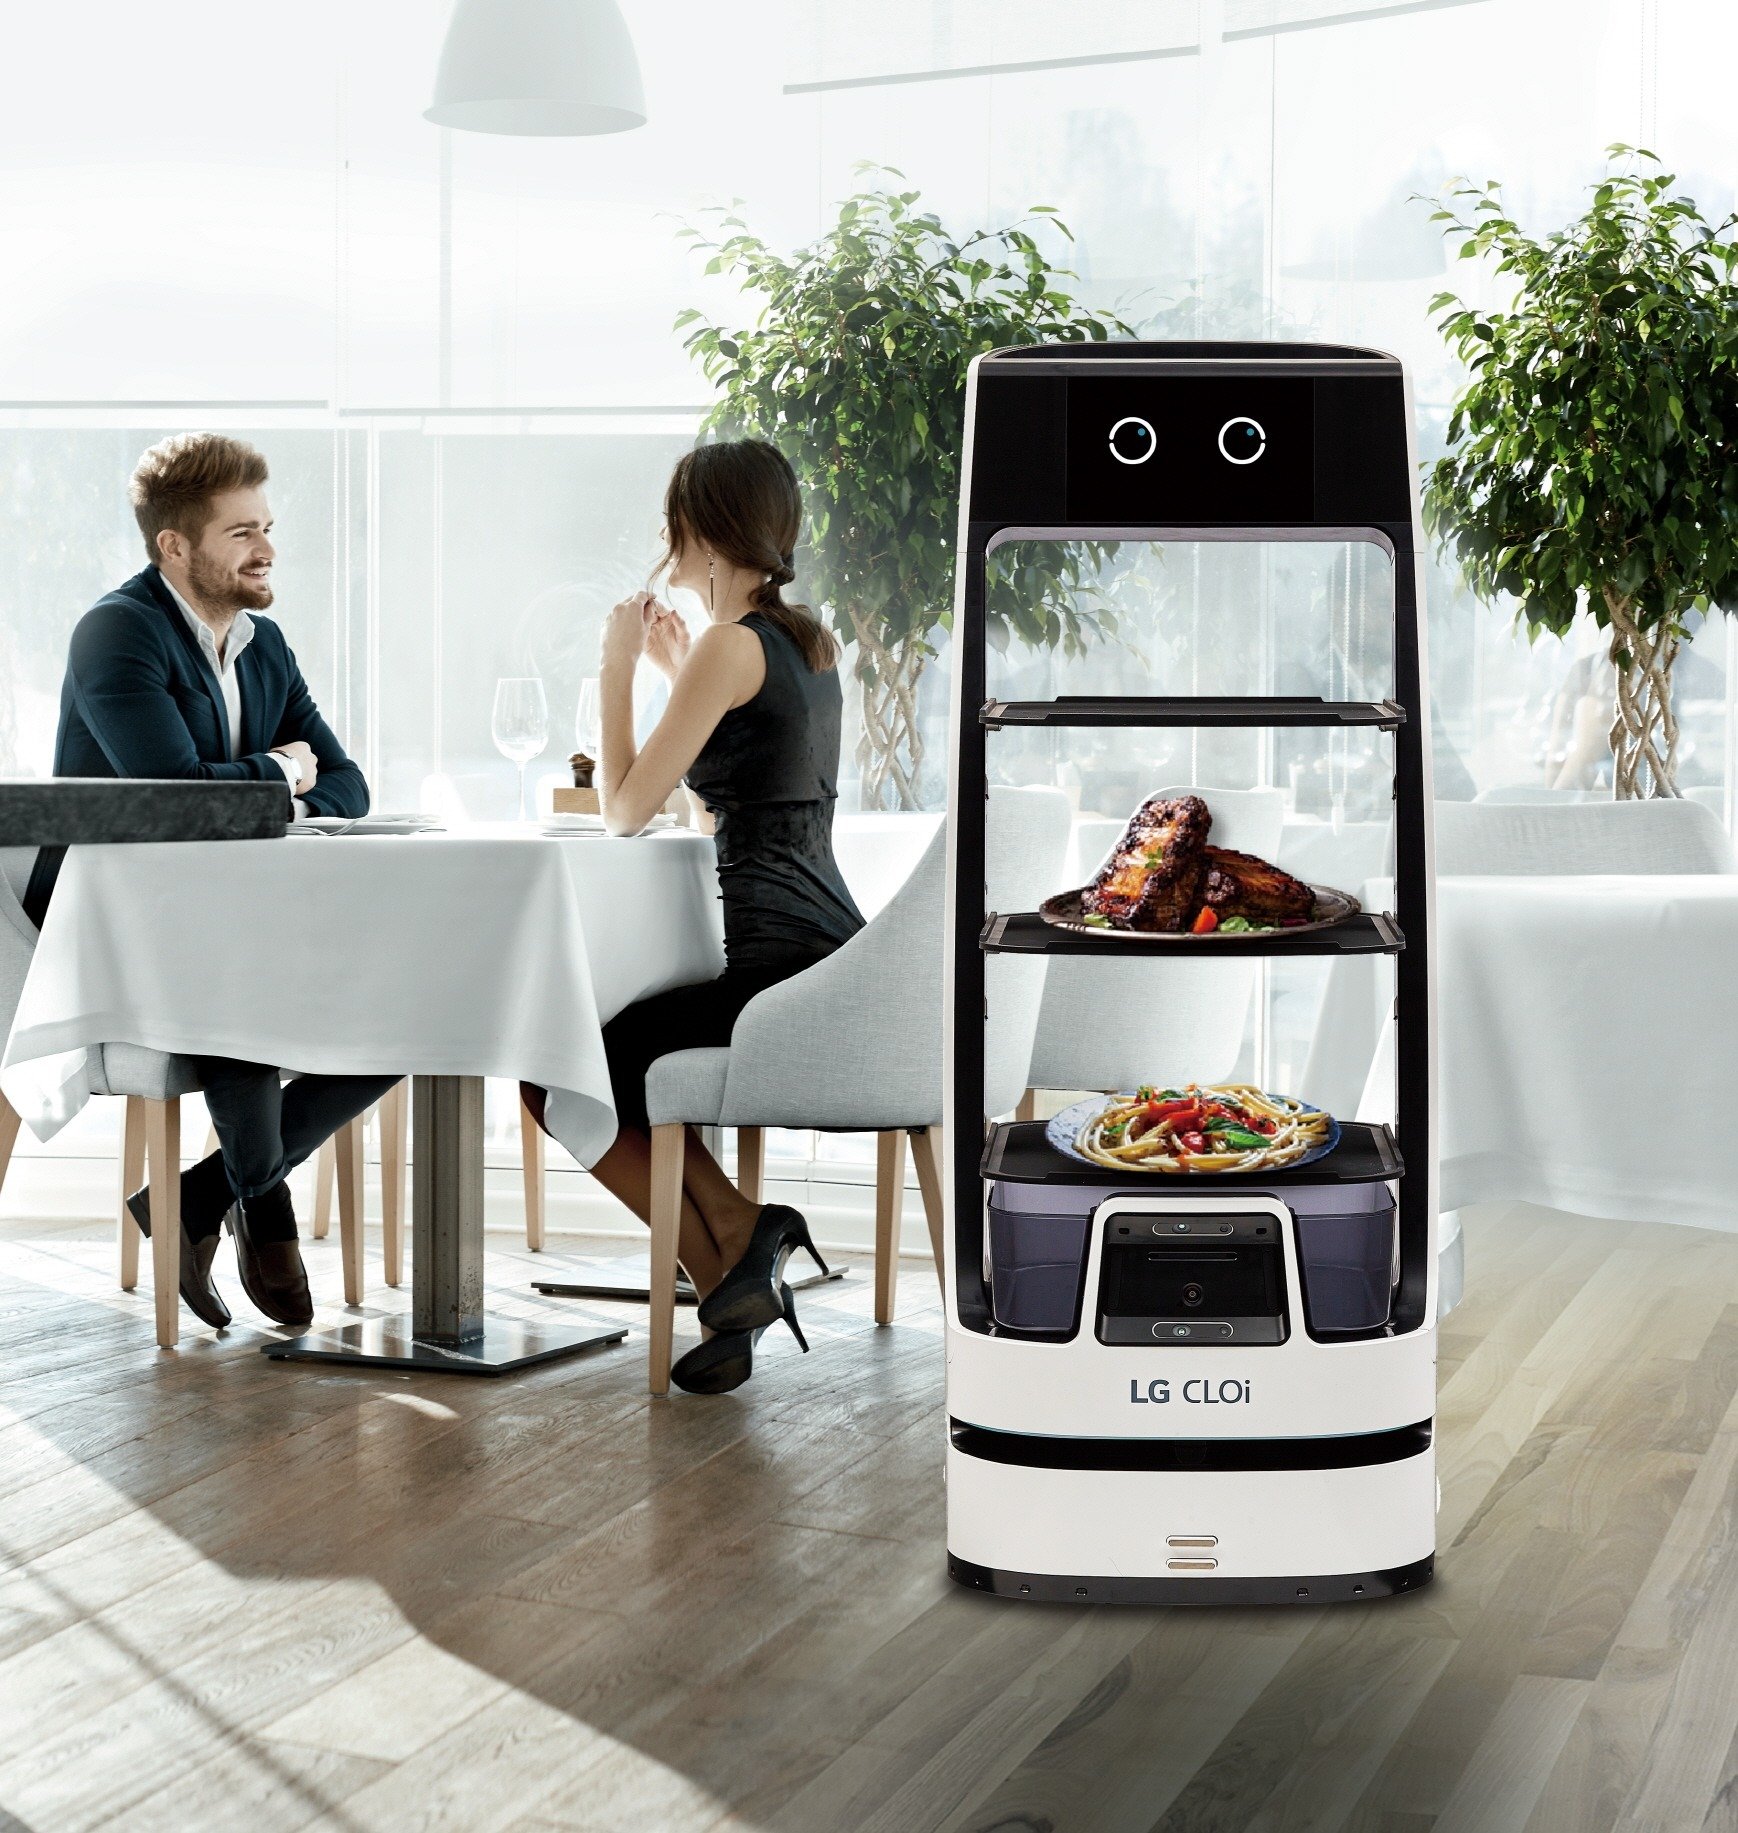 Nowy robot LG CLOi ServeBot zapewnia płynną pracę i niezawodną obsługę klienta